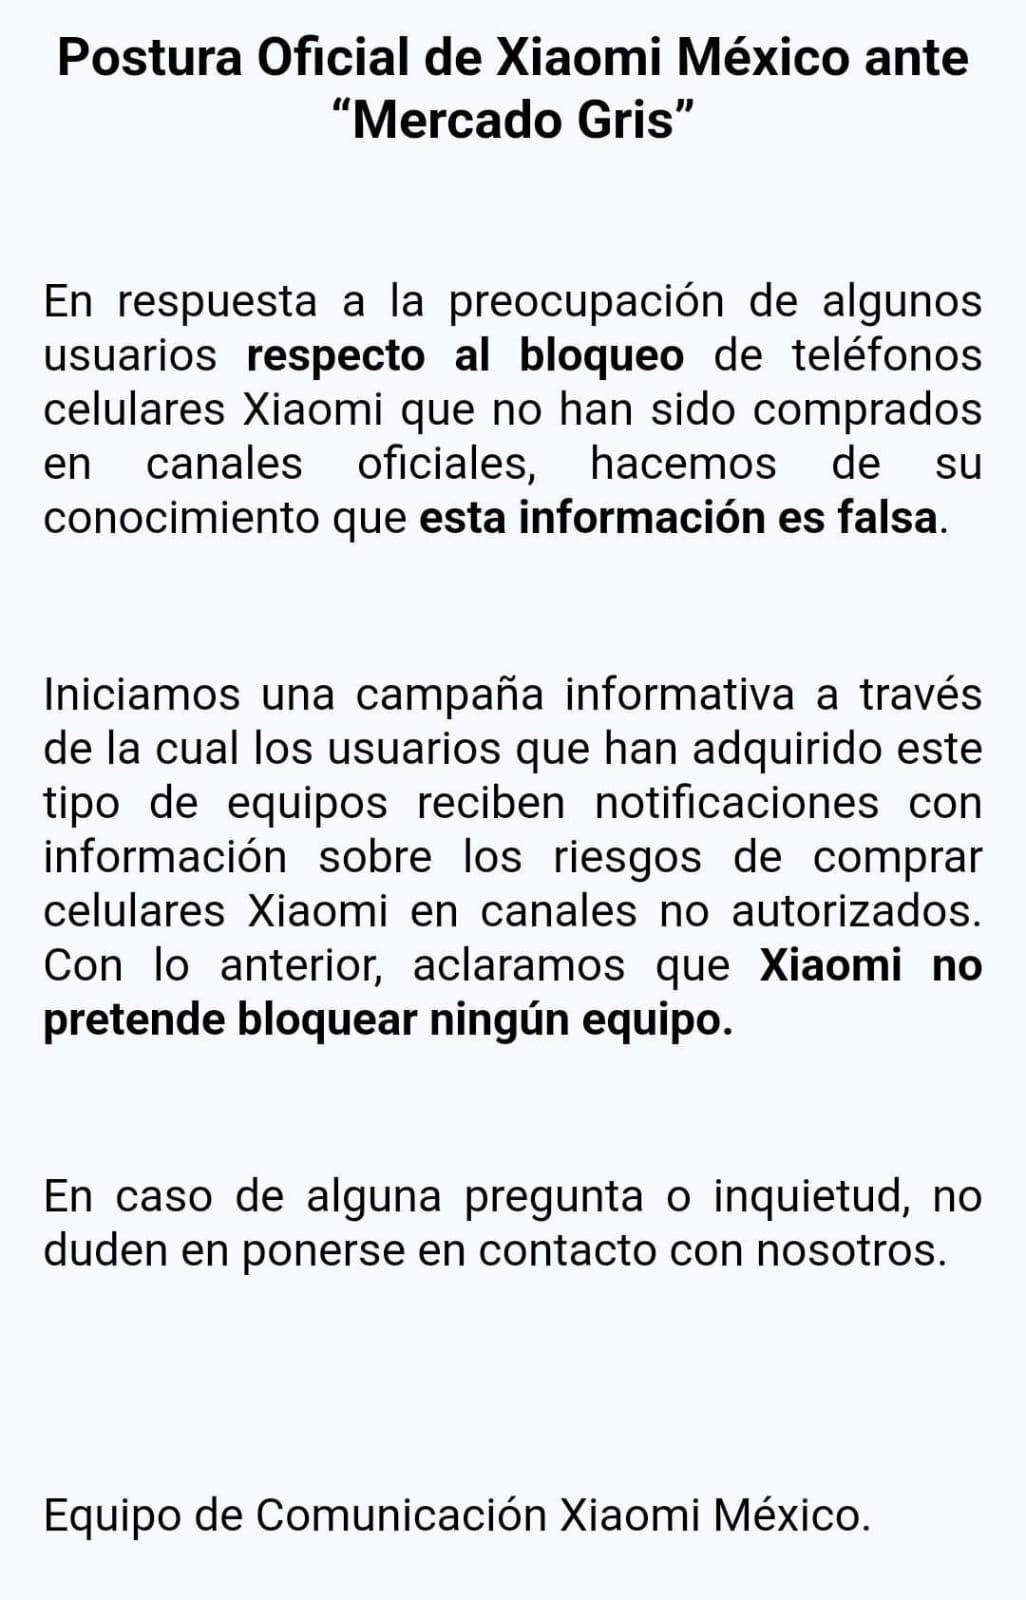 Xiaomi desmiente bloqueo a mercado gris de celulares en México